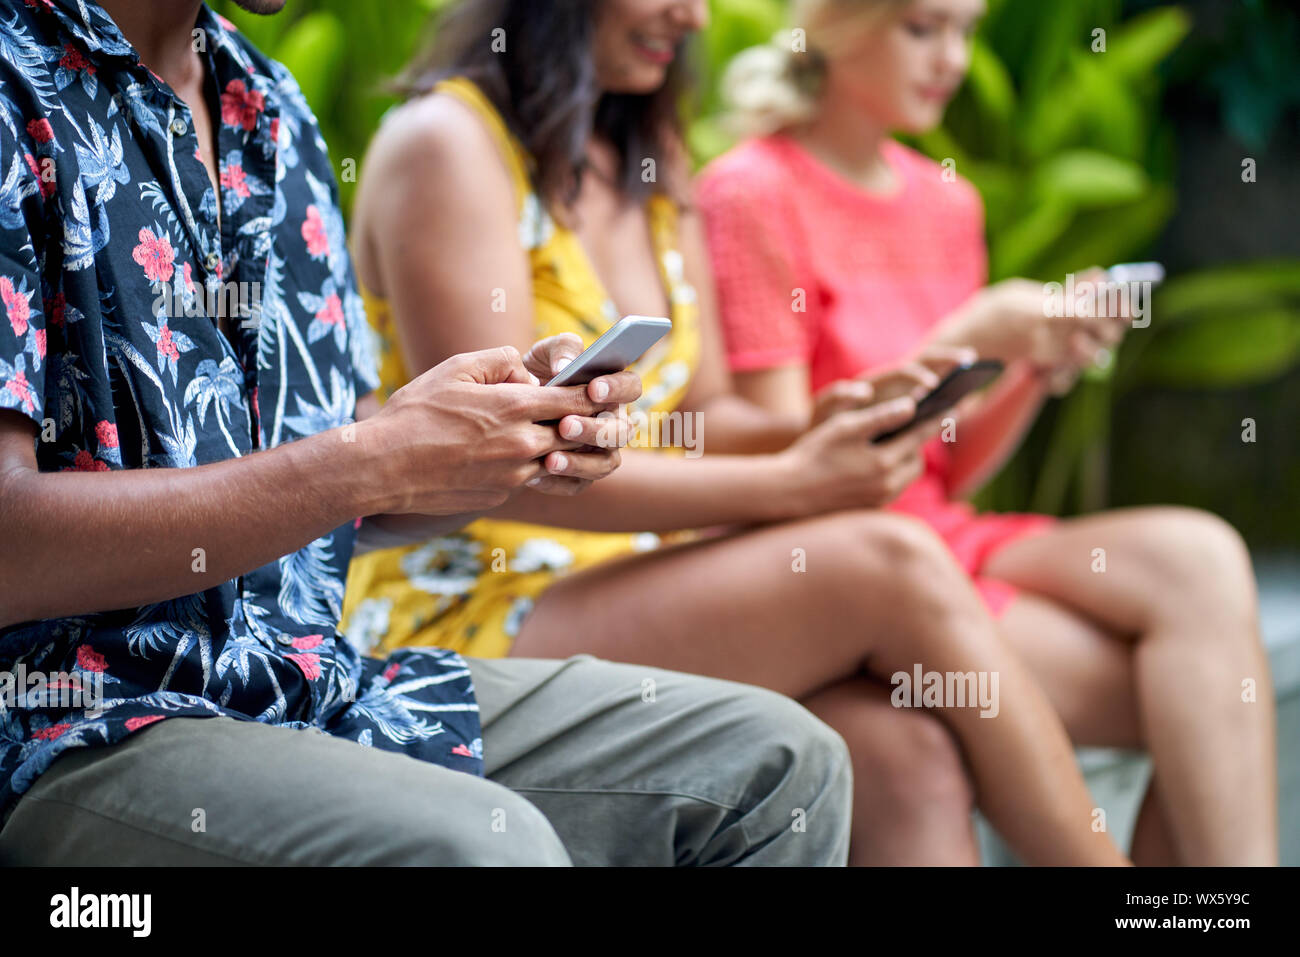 Unposed de style libre trois millénaires multi-ethnique de personnes entrant sur smartphone ina jardin tropical avec des plantes vertes Banque D'Images